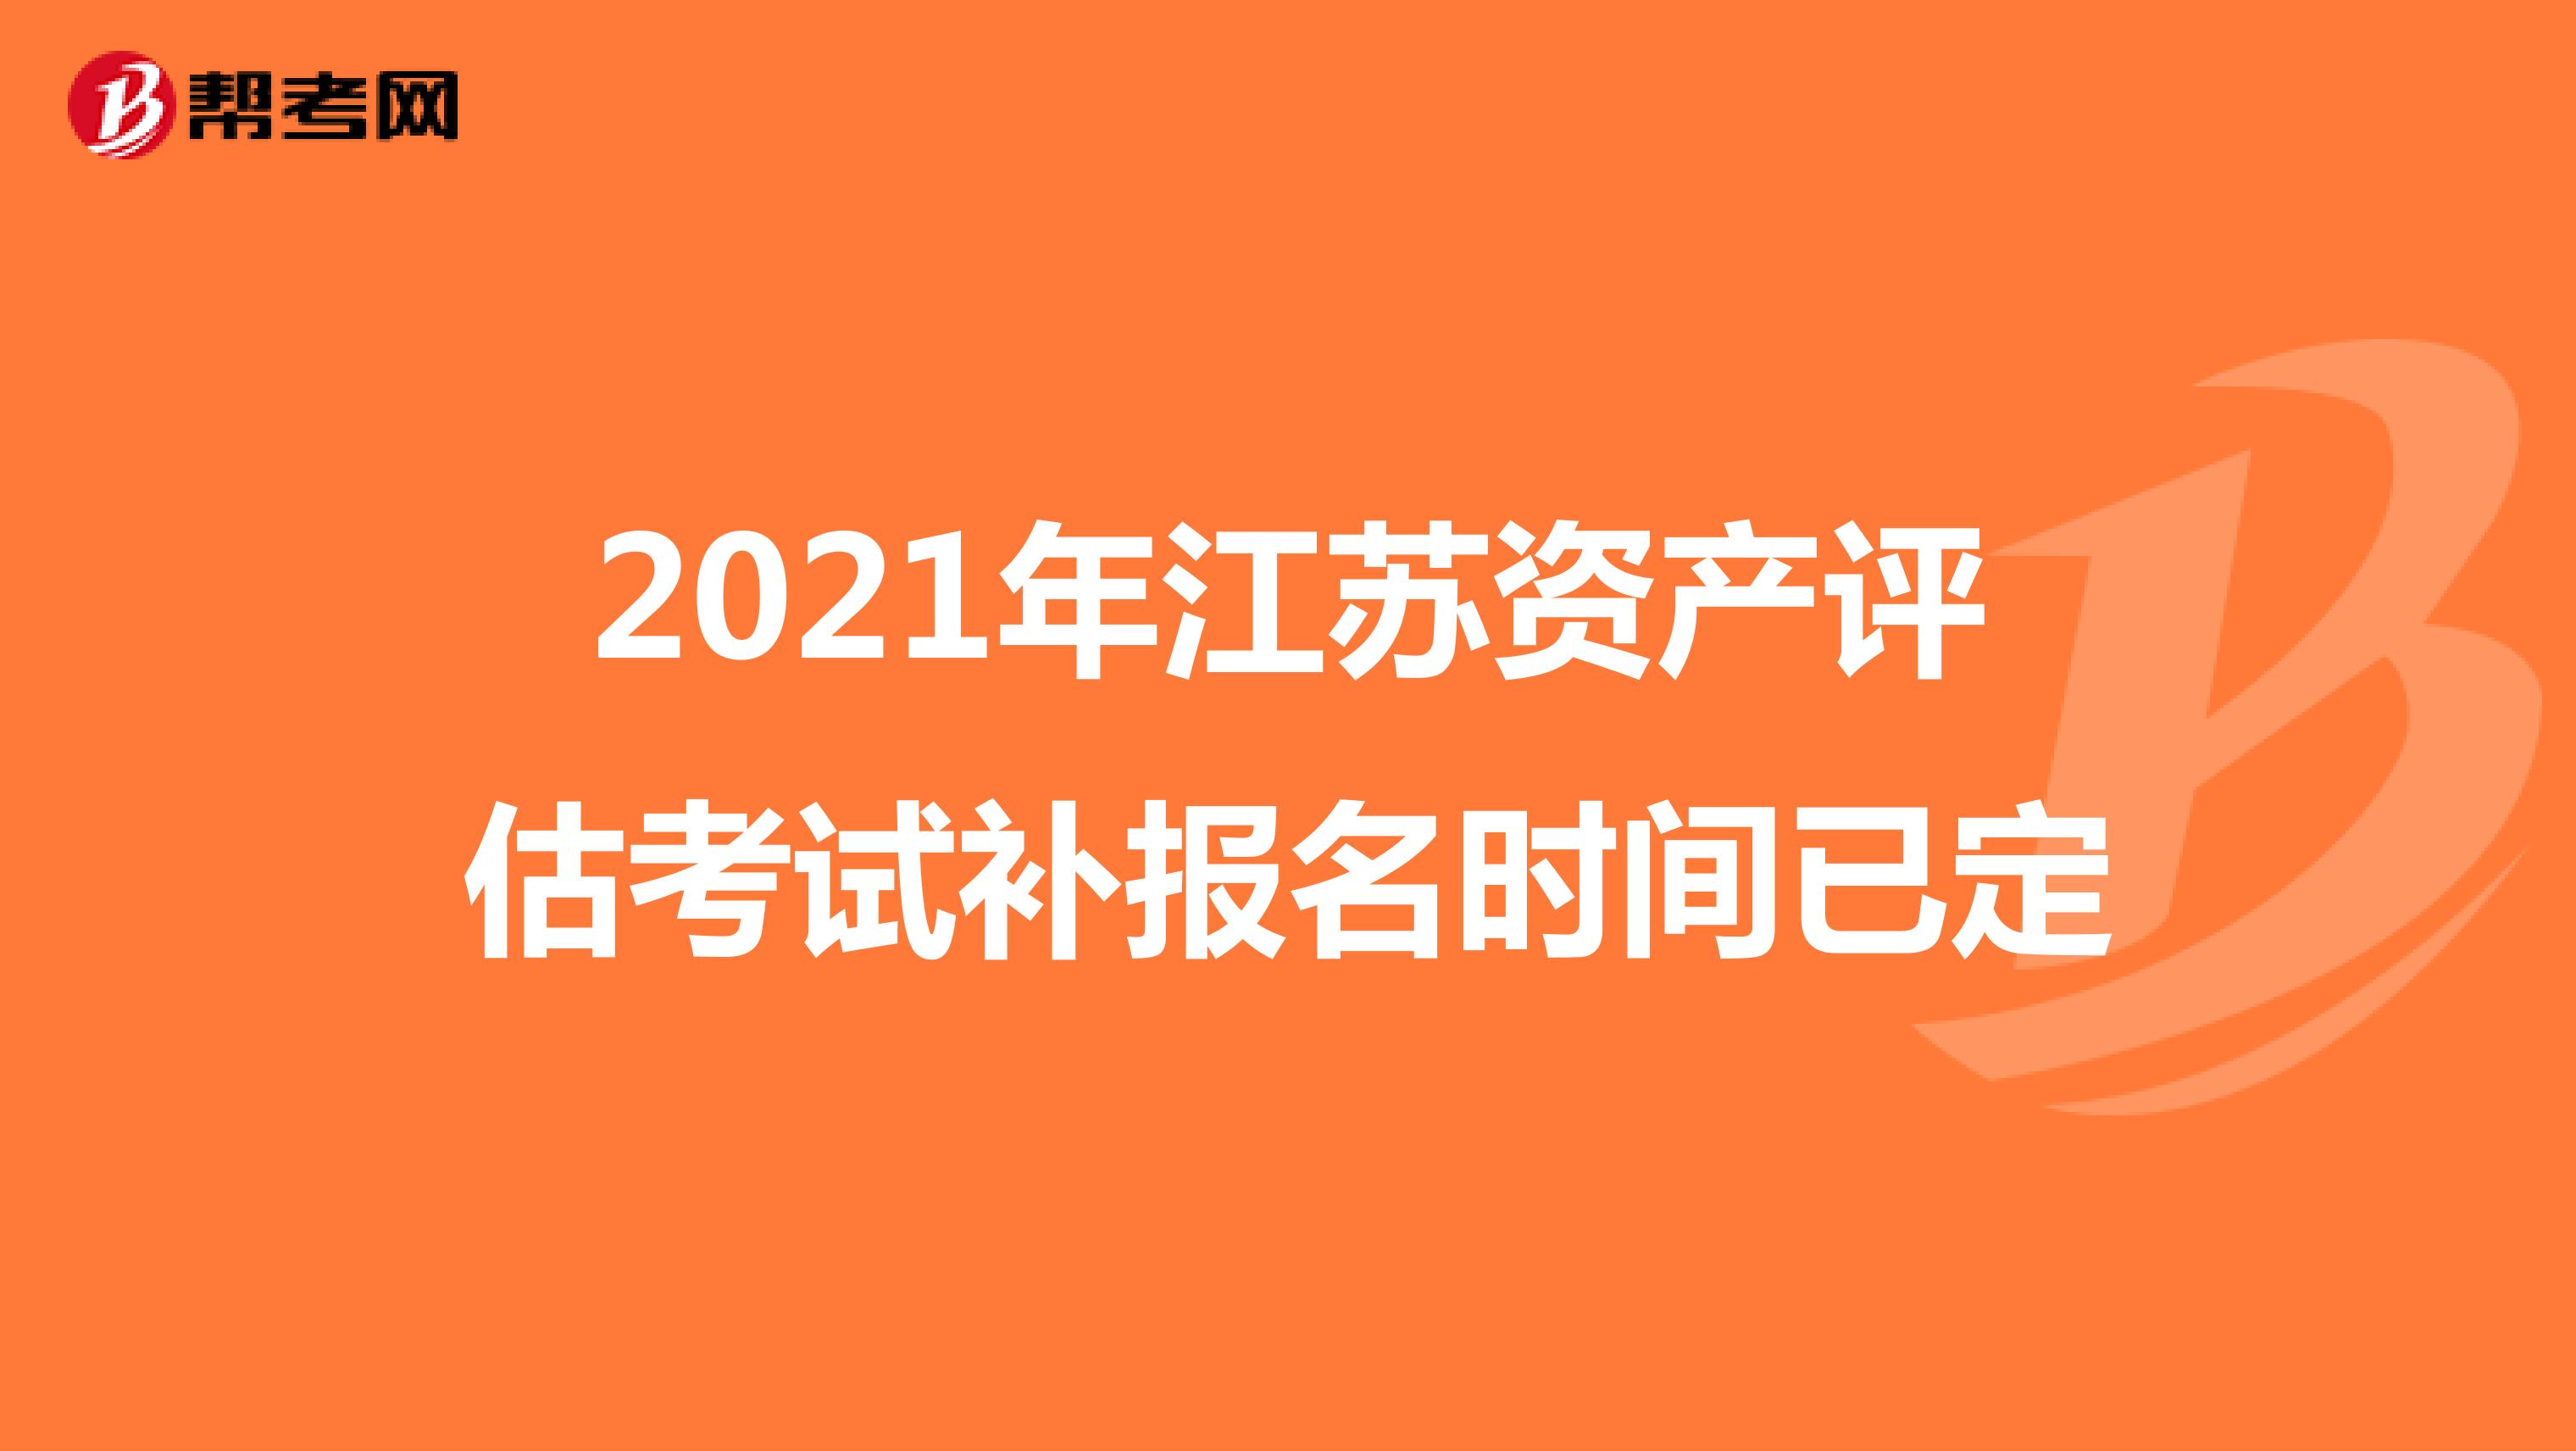 2021年江苏资产评估考试补报名时间已定